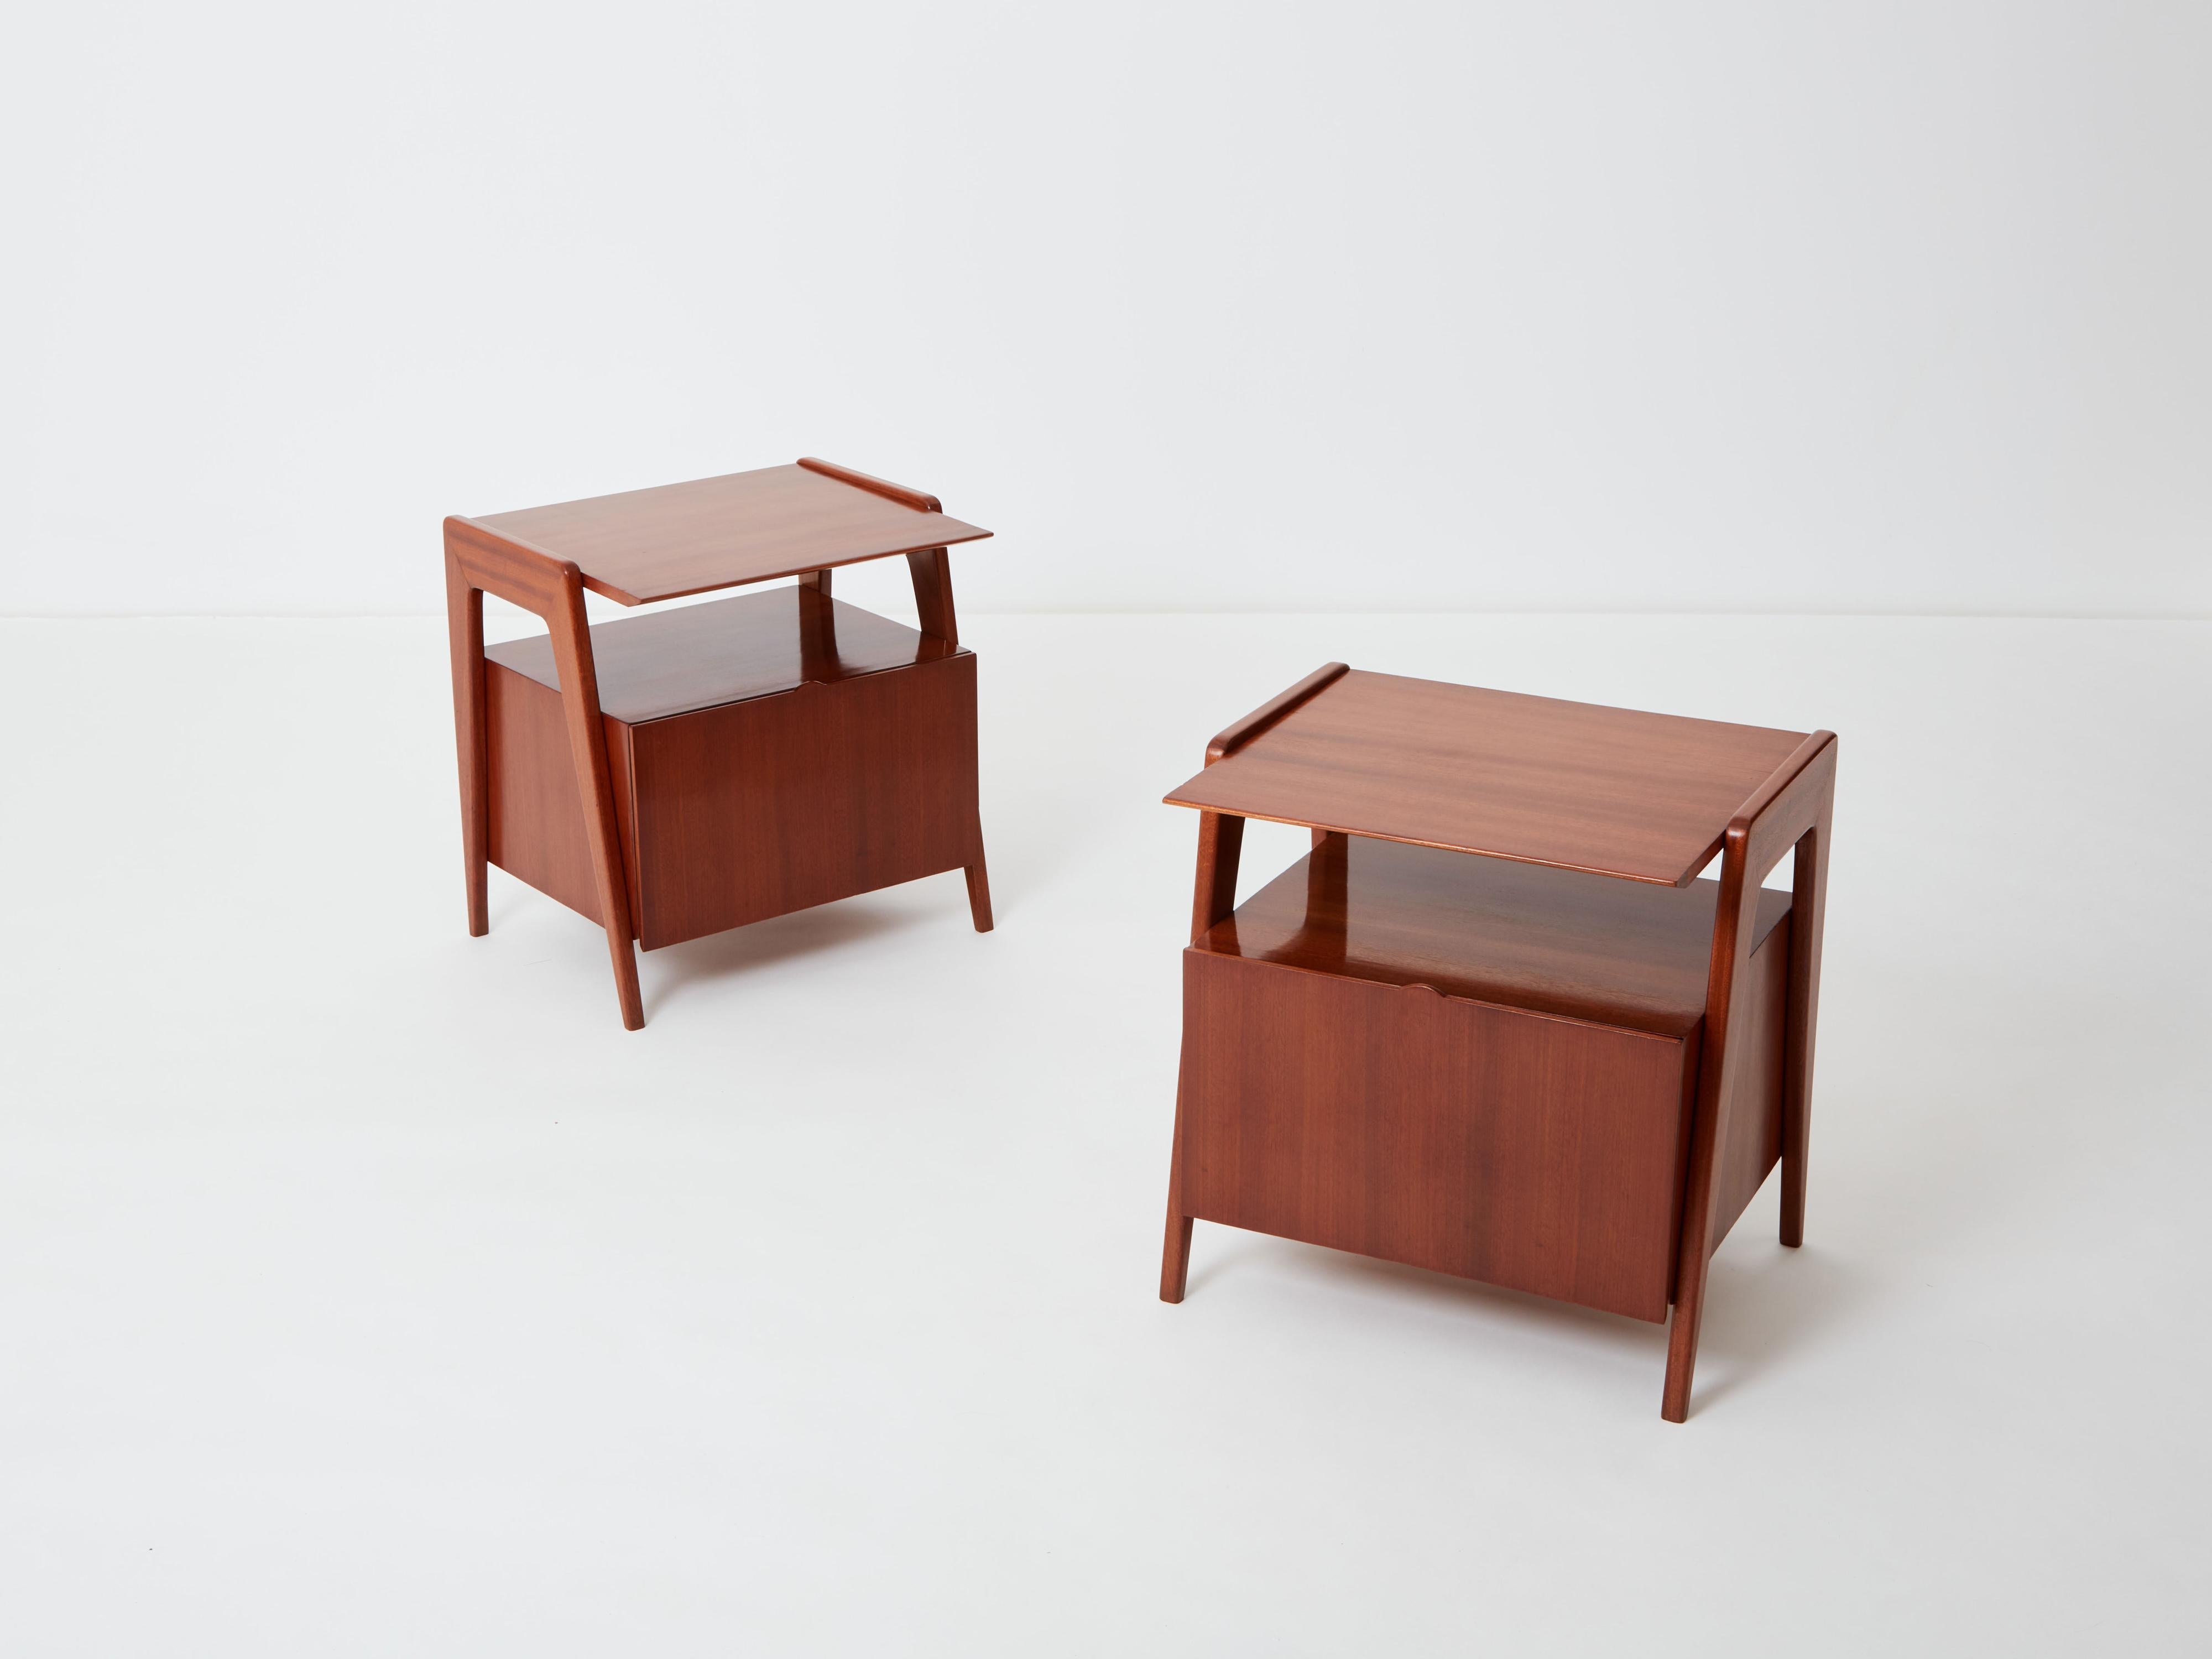 Cette rare paire de tables de chevet à deux niveaux du designer italien Silvio Cavatorta a été créée au début des années 1950 et entièrement réalisée en bois d'acajou. Ces tables sont typiques du style italien intemporel du milieu du siècle dans les